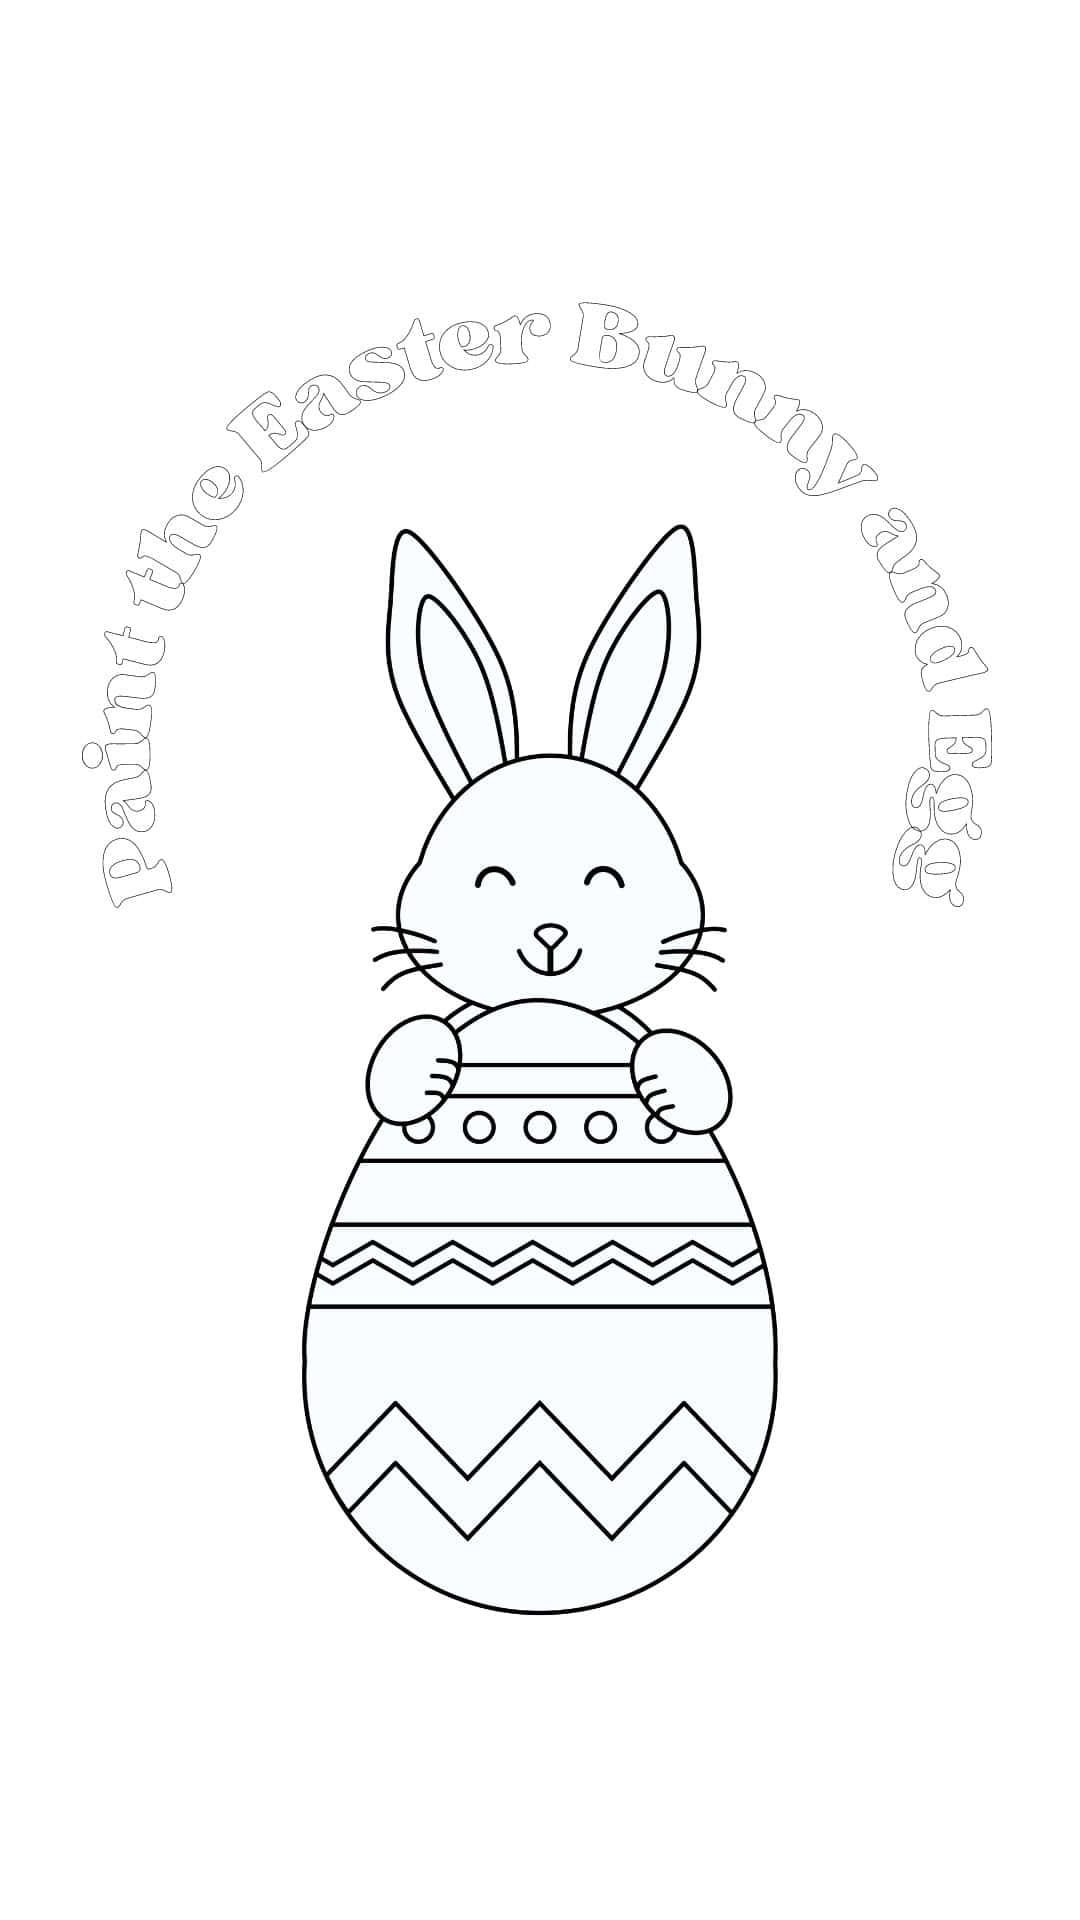 Dibujoesquemático De Un Conejito Dentro De Un Huevo De Pascua Como Fondo De Pantalla De Computadora O Móvil.